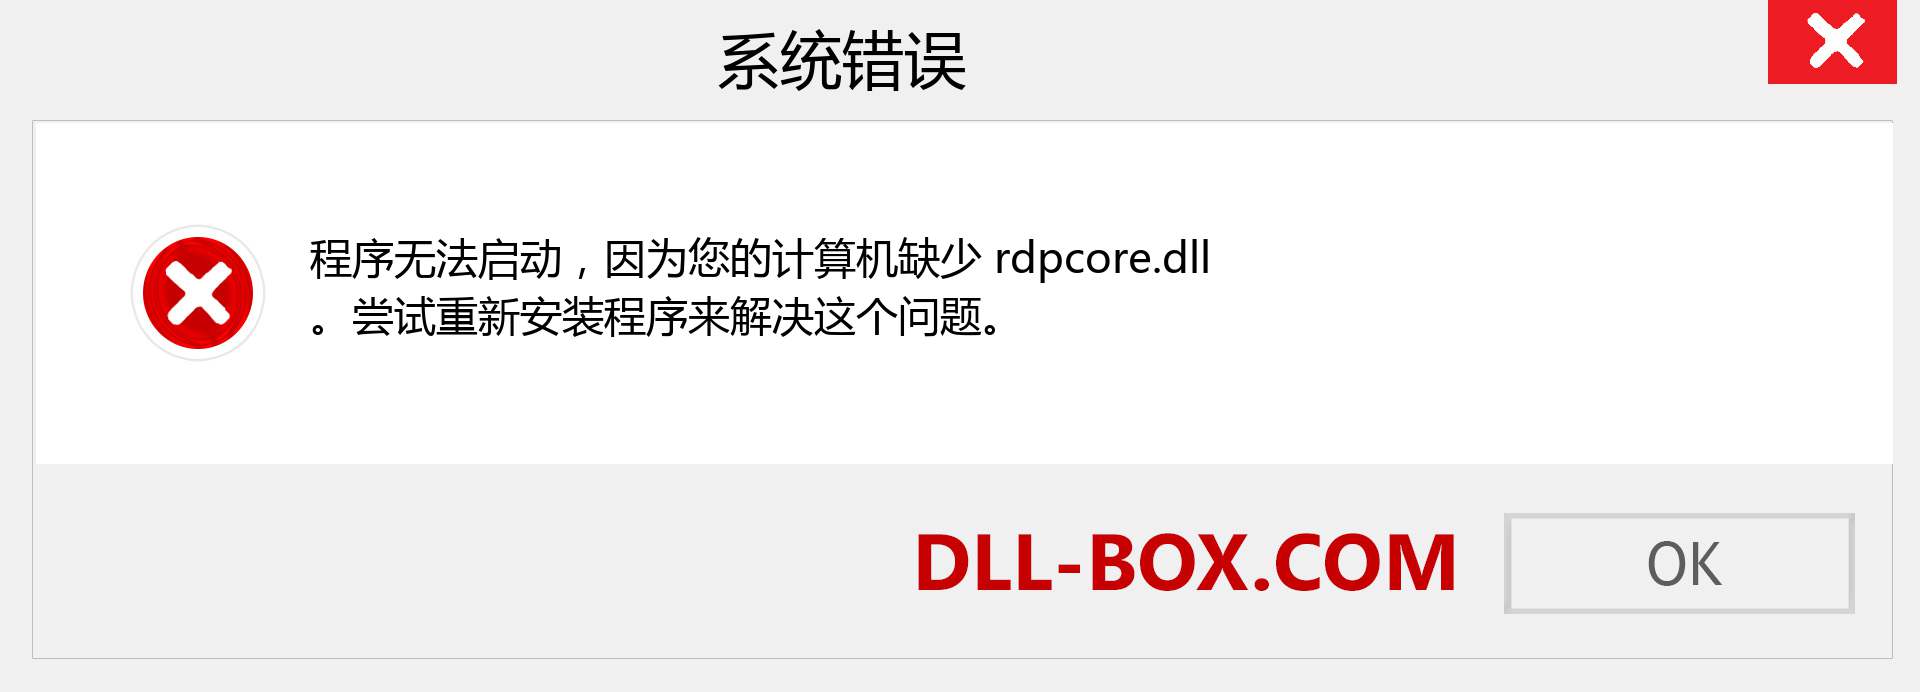 rdpcore.dll 文件丢失？。 适用于 Windows 7、8、10 的下载 - 修复 Windows、照片、图像上的 rdpcore dll 丢失错误